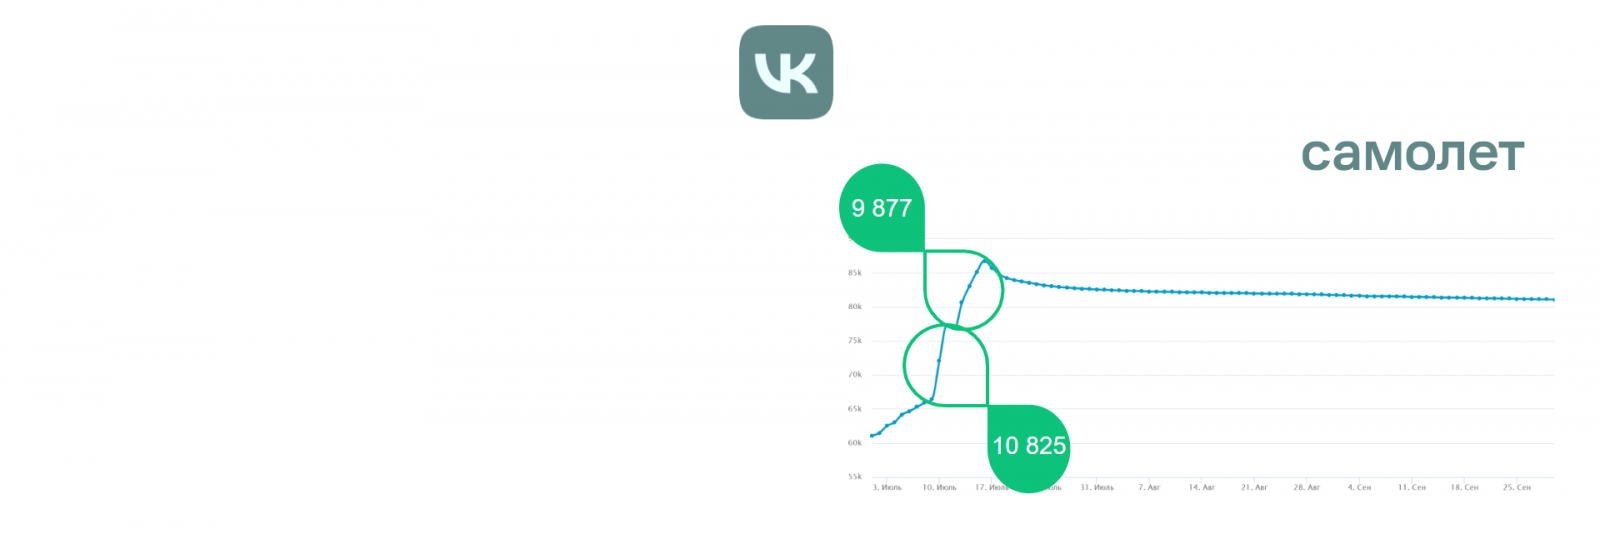 График подписчиков “ГК Самолет” во ВКонтакте имеет два резких скачка  - в общей сумме за 1 неделю плюс 20 тысяч подписчиков.